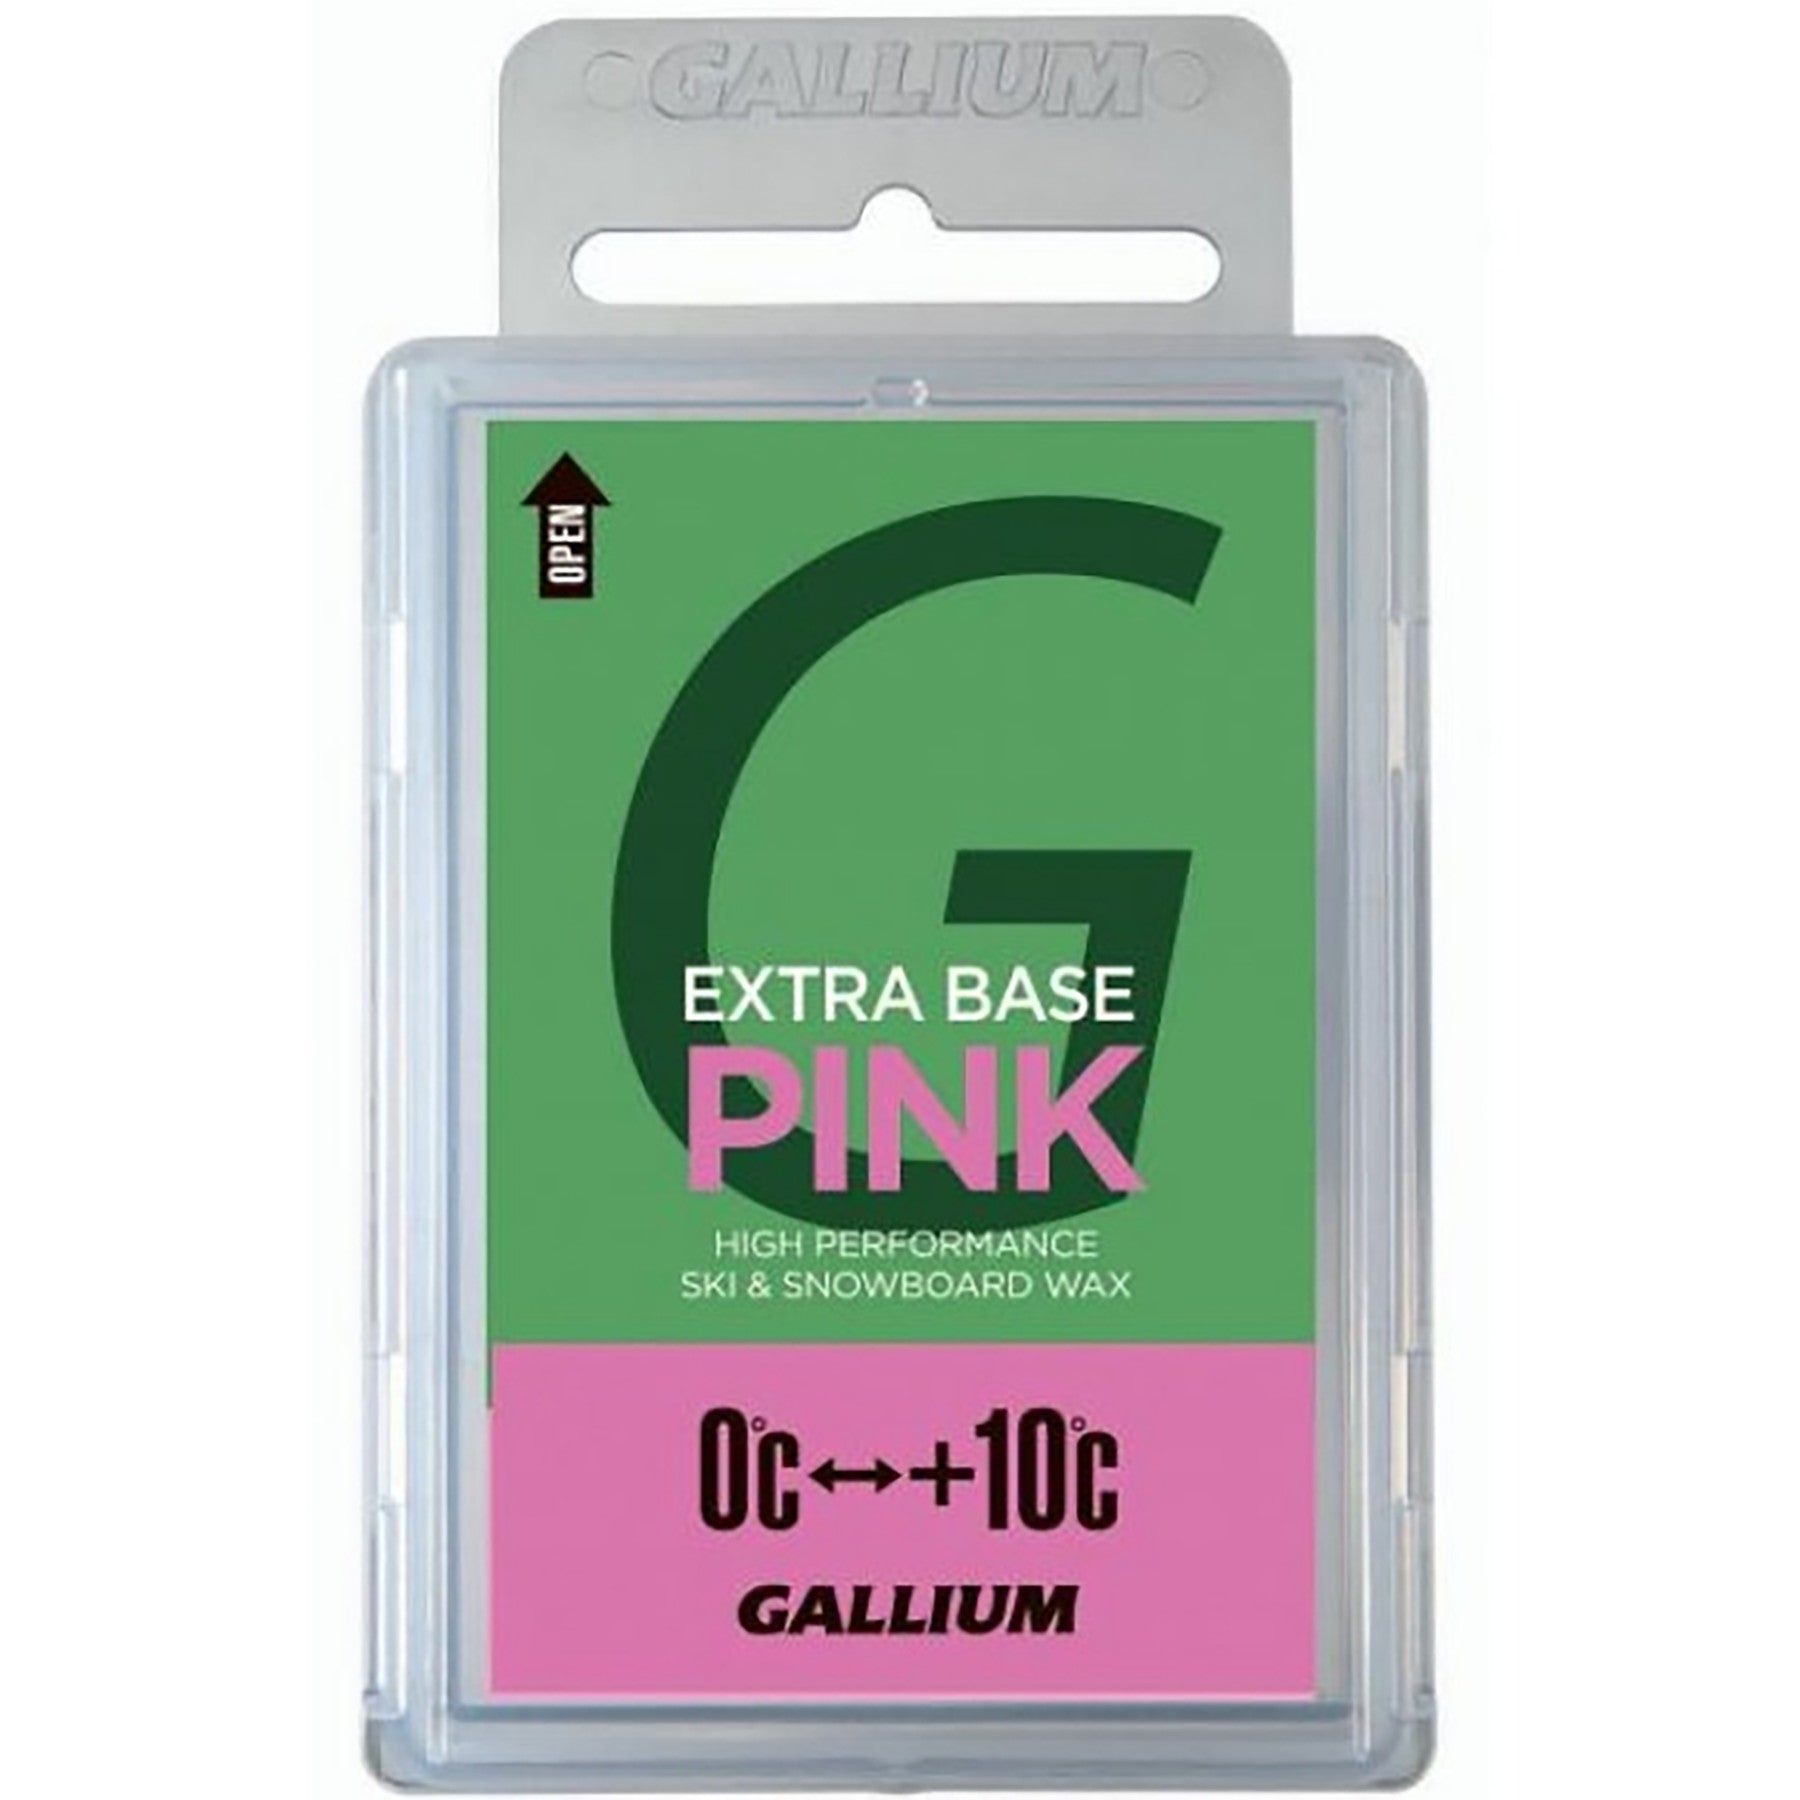 Gallium PINK Glide Wax 200g